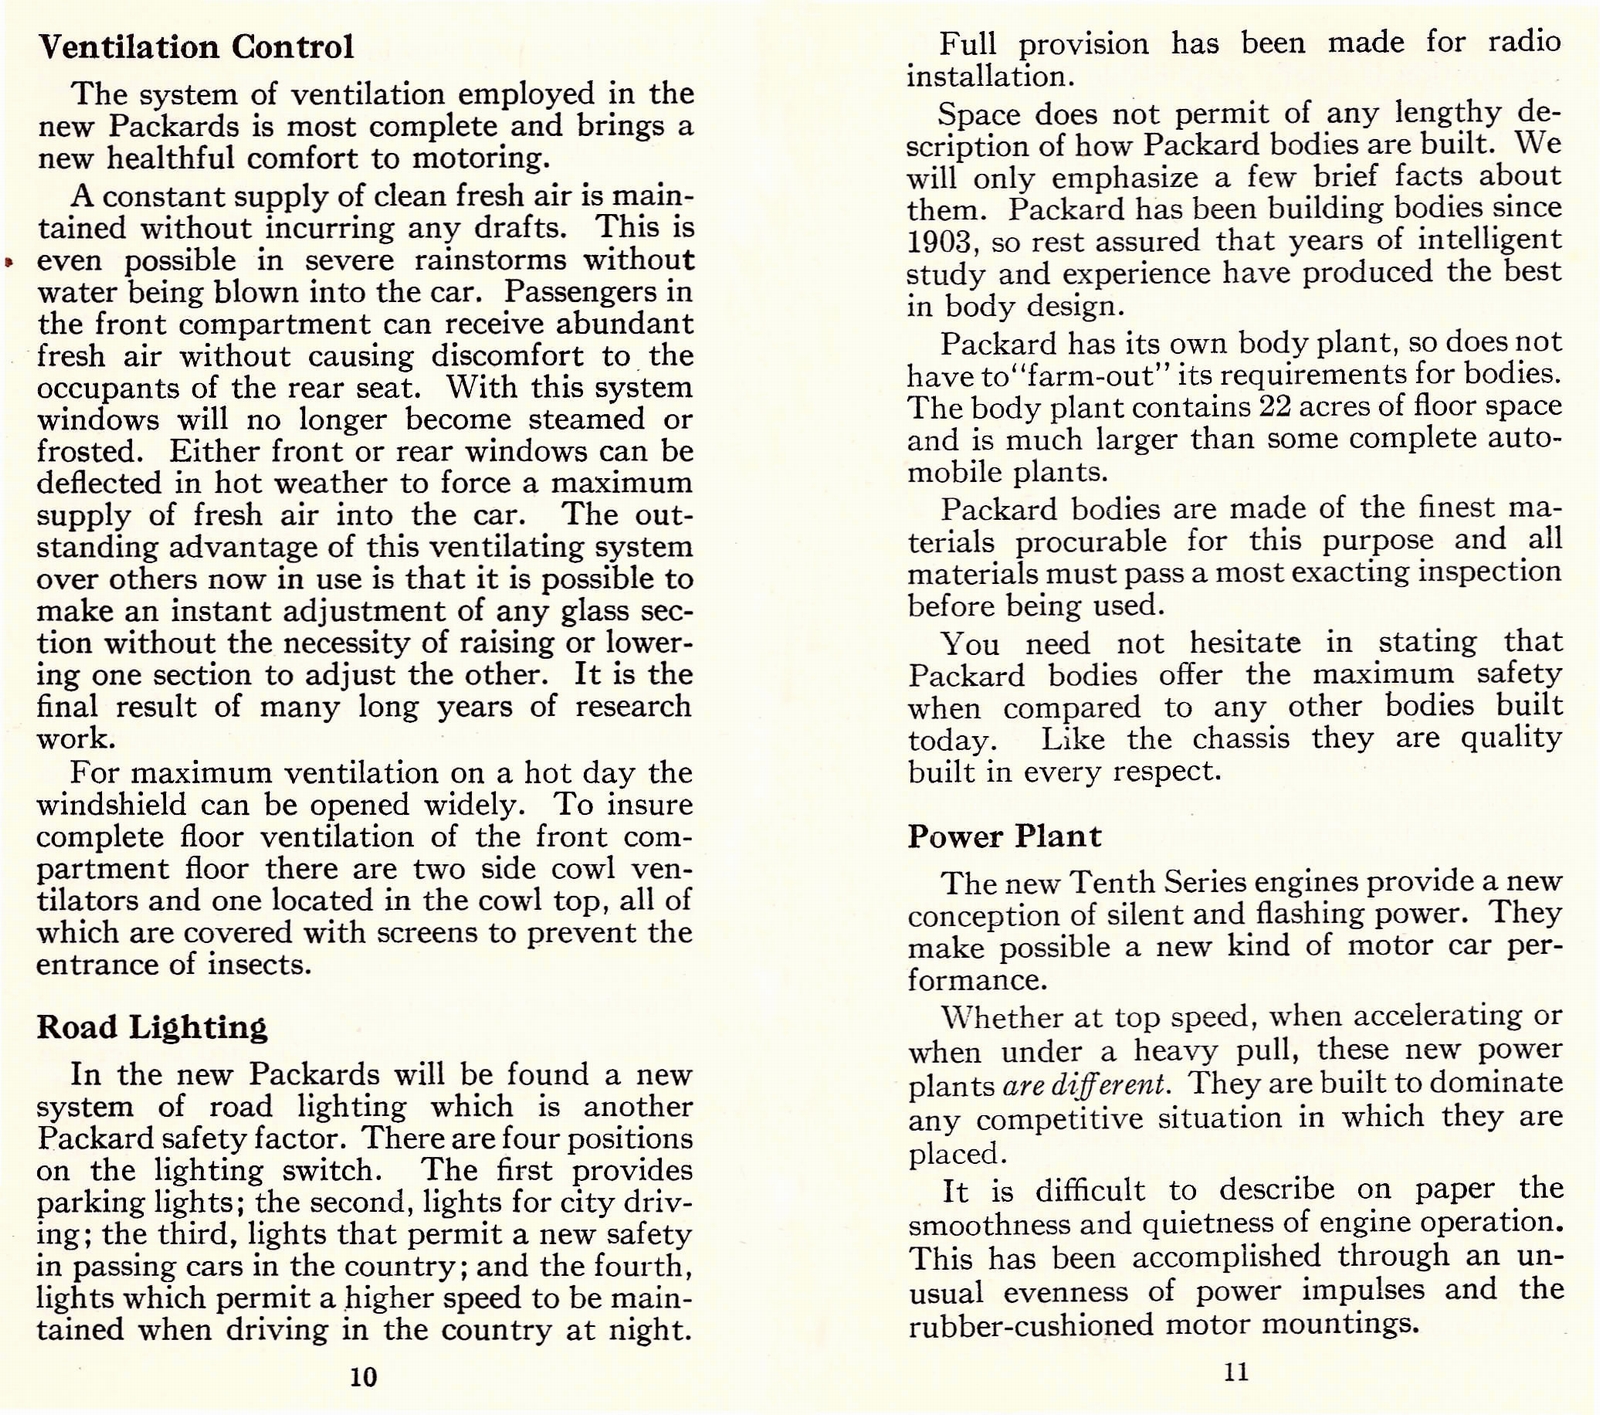 n_1933 Packard Facts Booklet-10-11.jpg